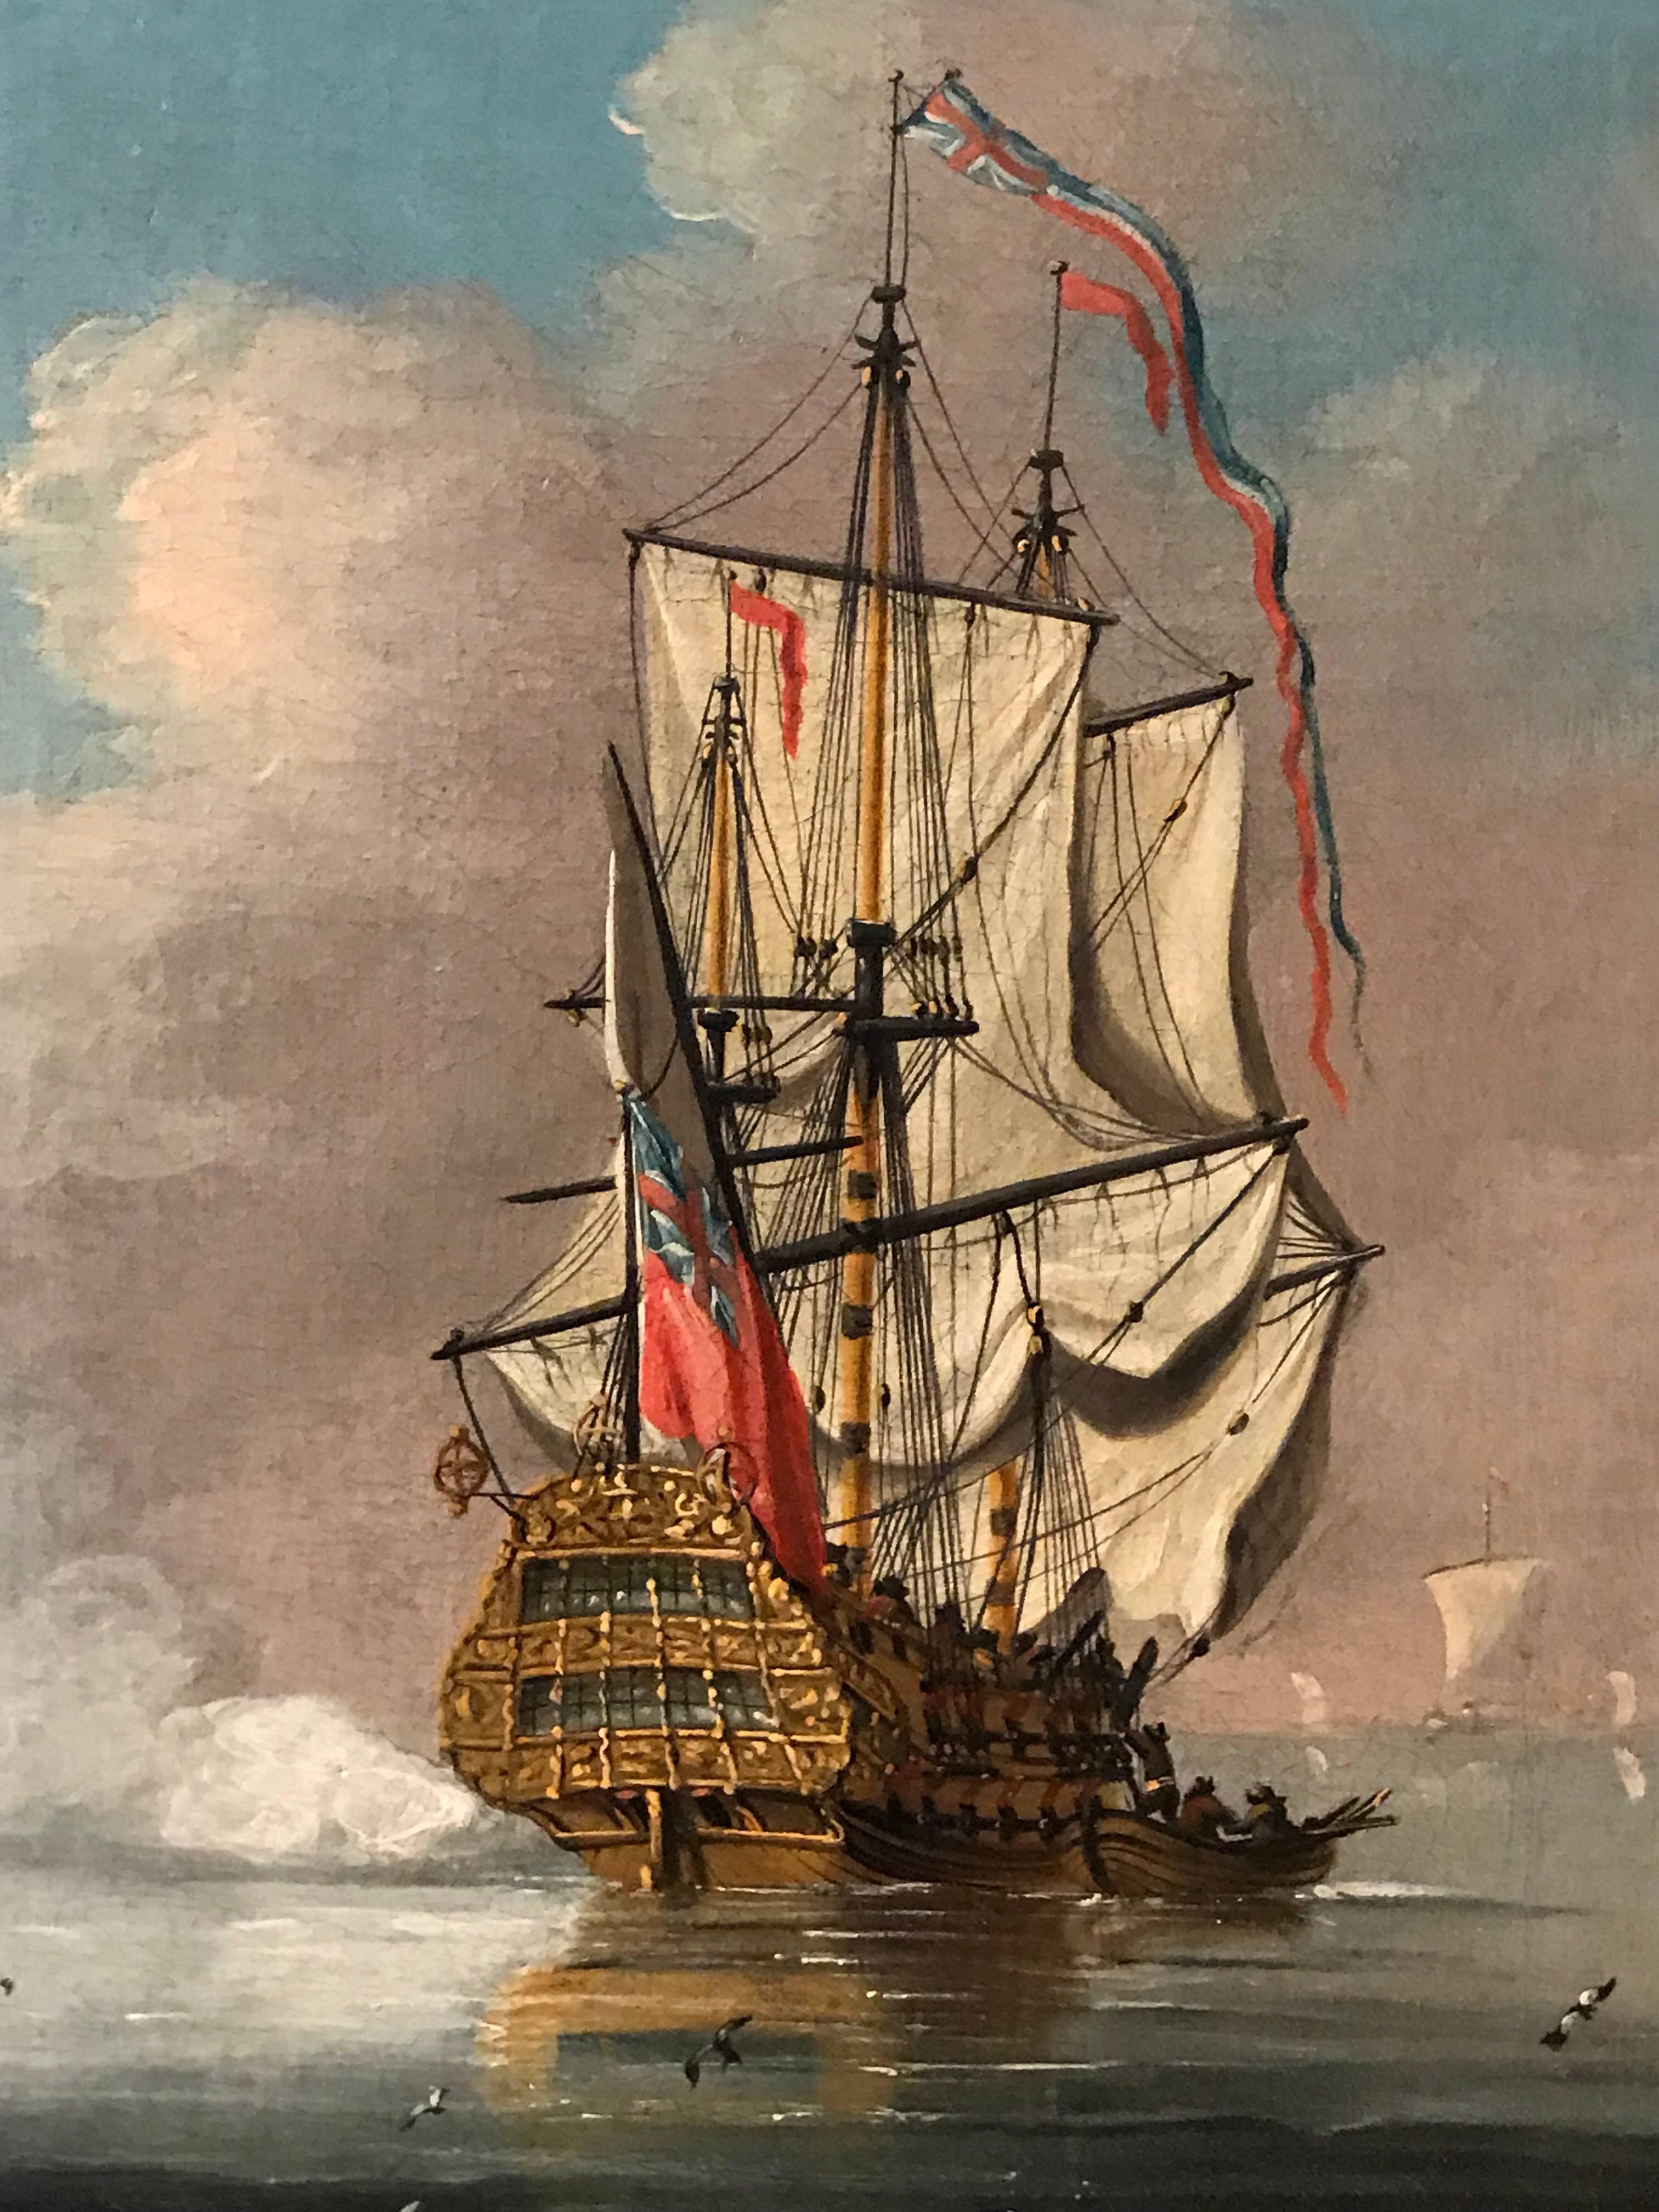 18th century sailing ships